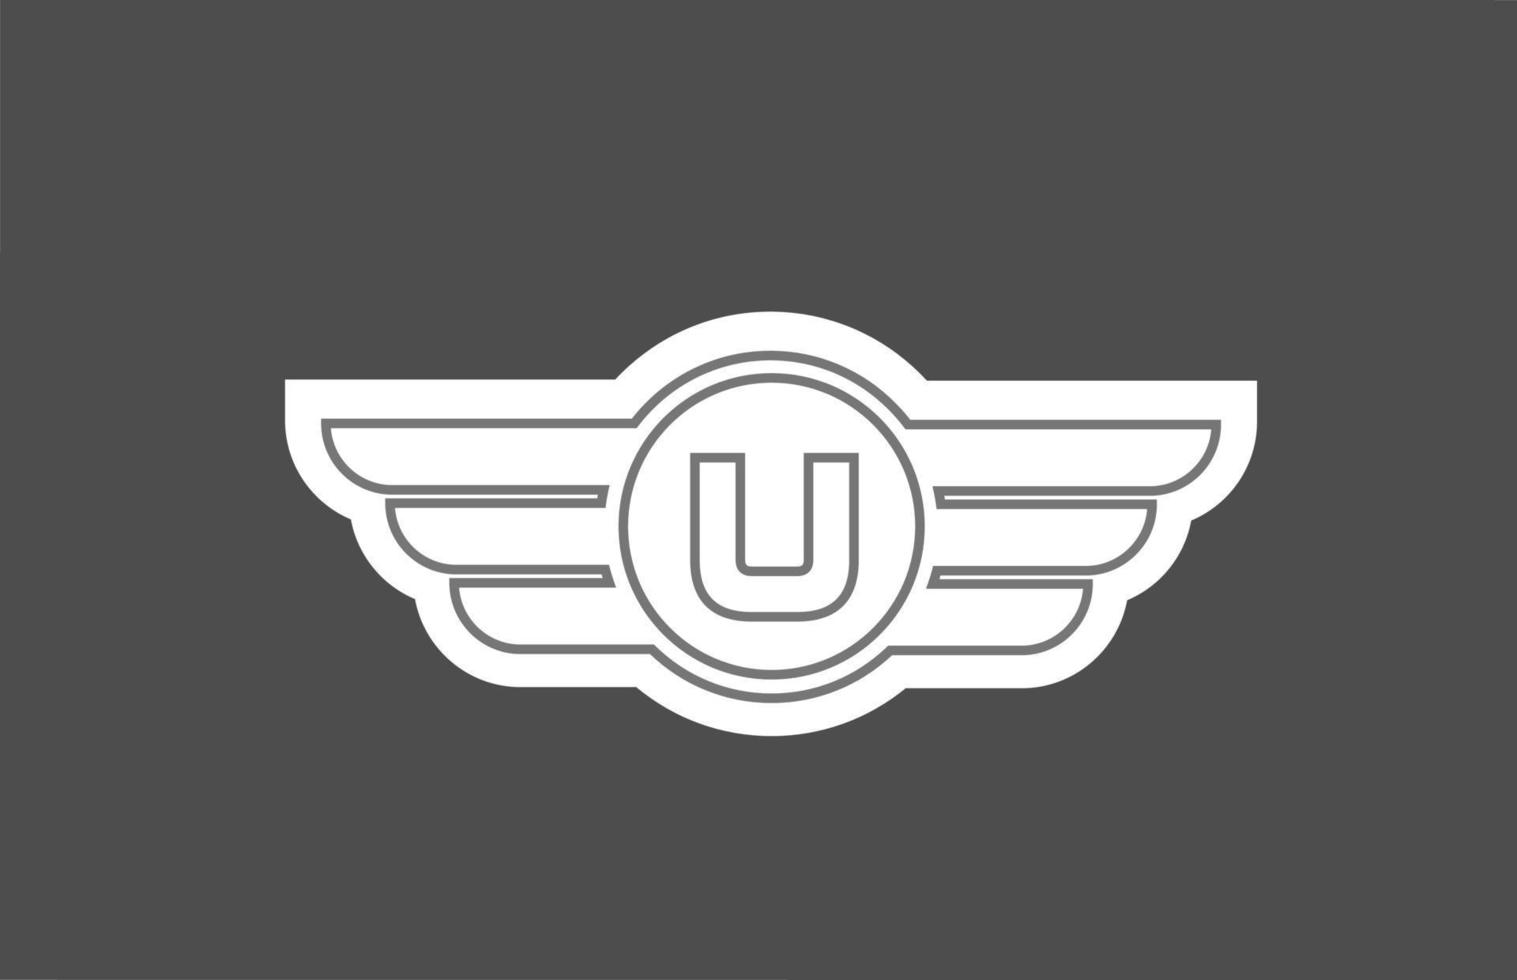 U icono de logotipo de letra del alfabeto para empresas y empresas con diseño de ala de línea vector